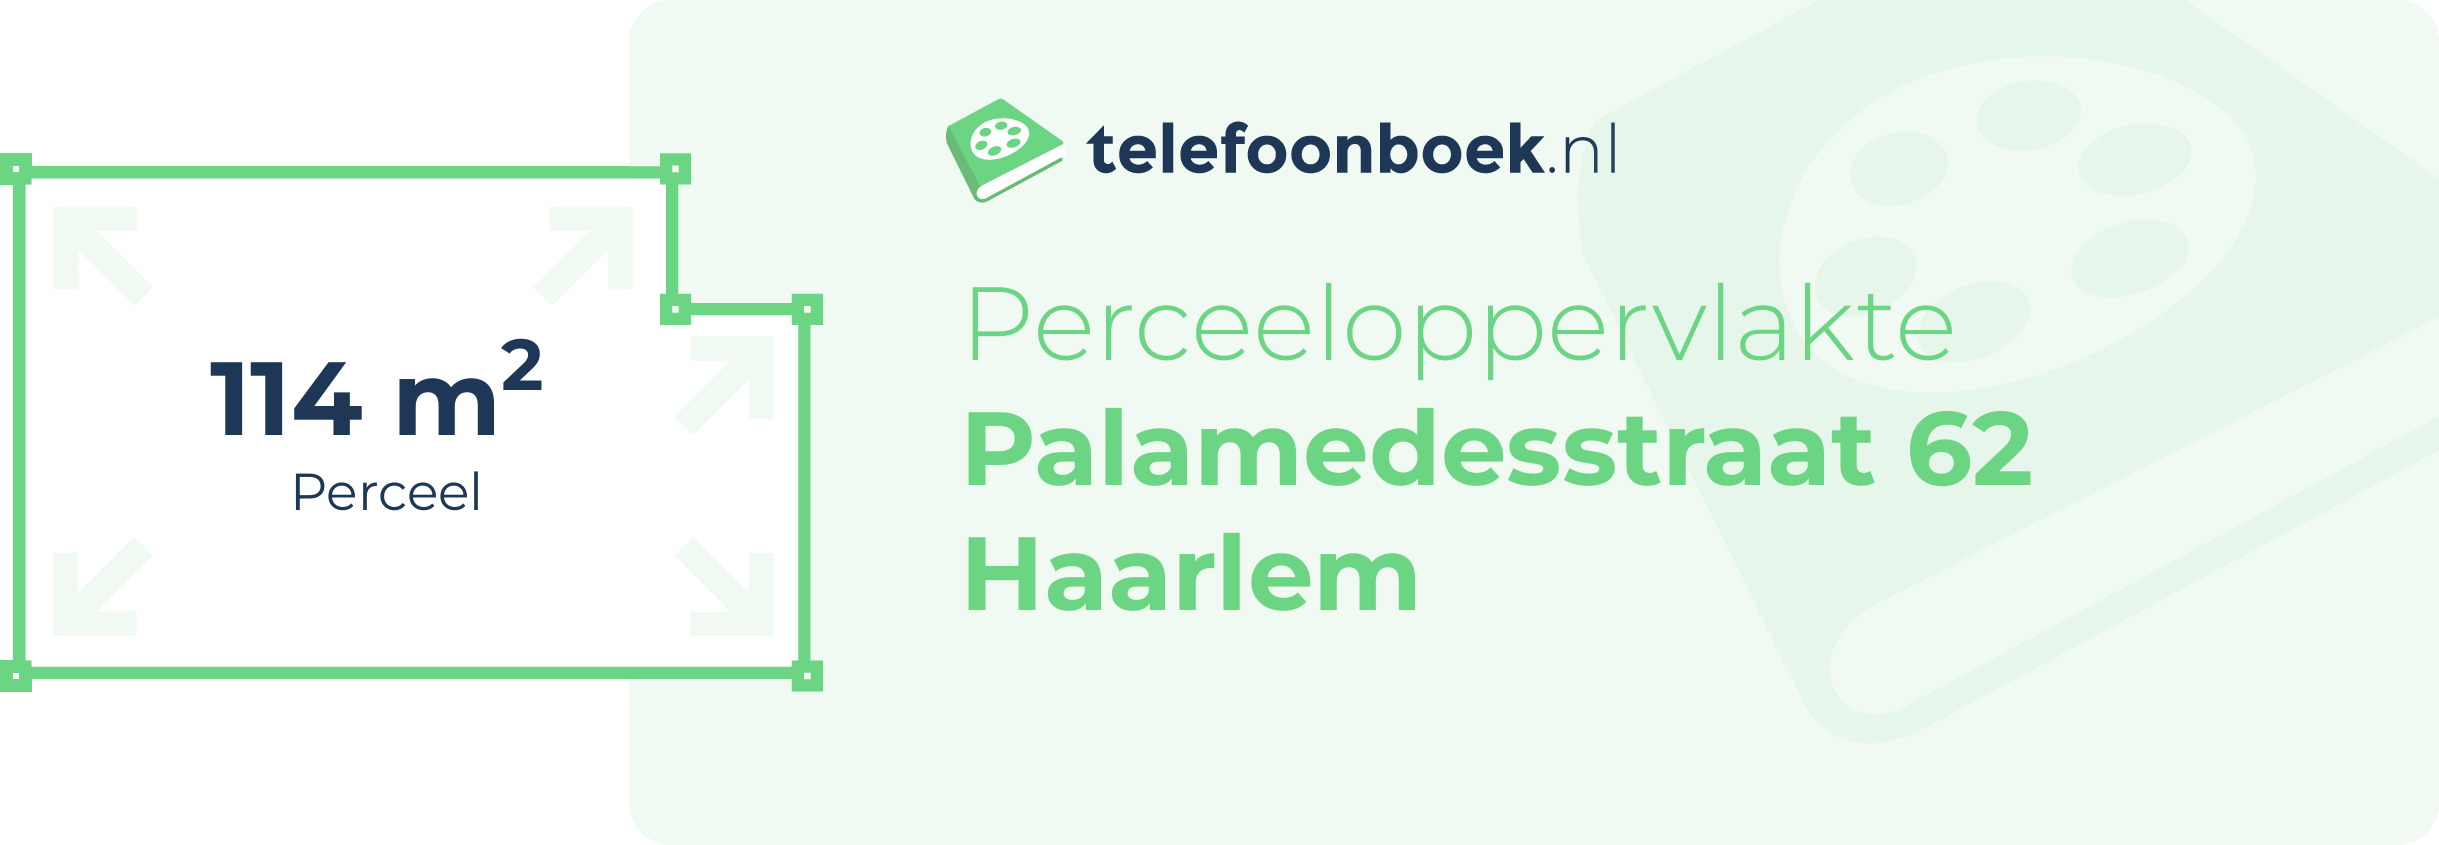 Perceeloppervlakte Palamedesstraat 62 Haarlem